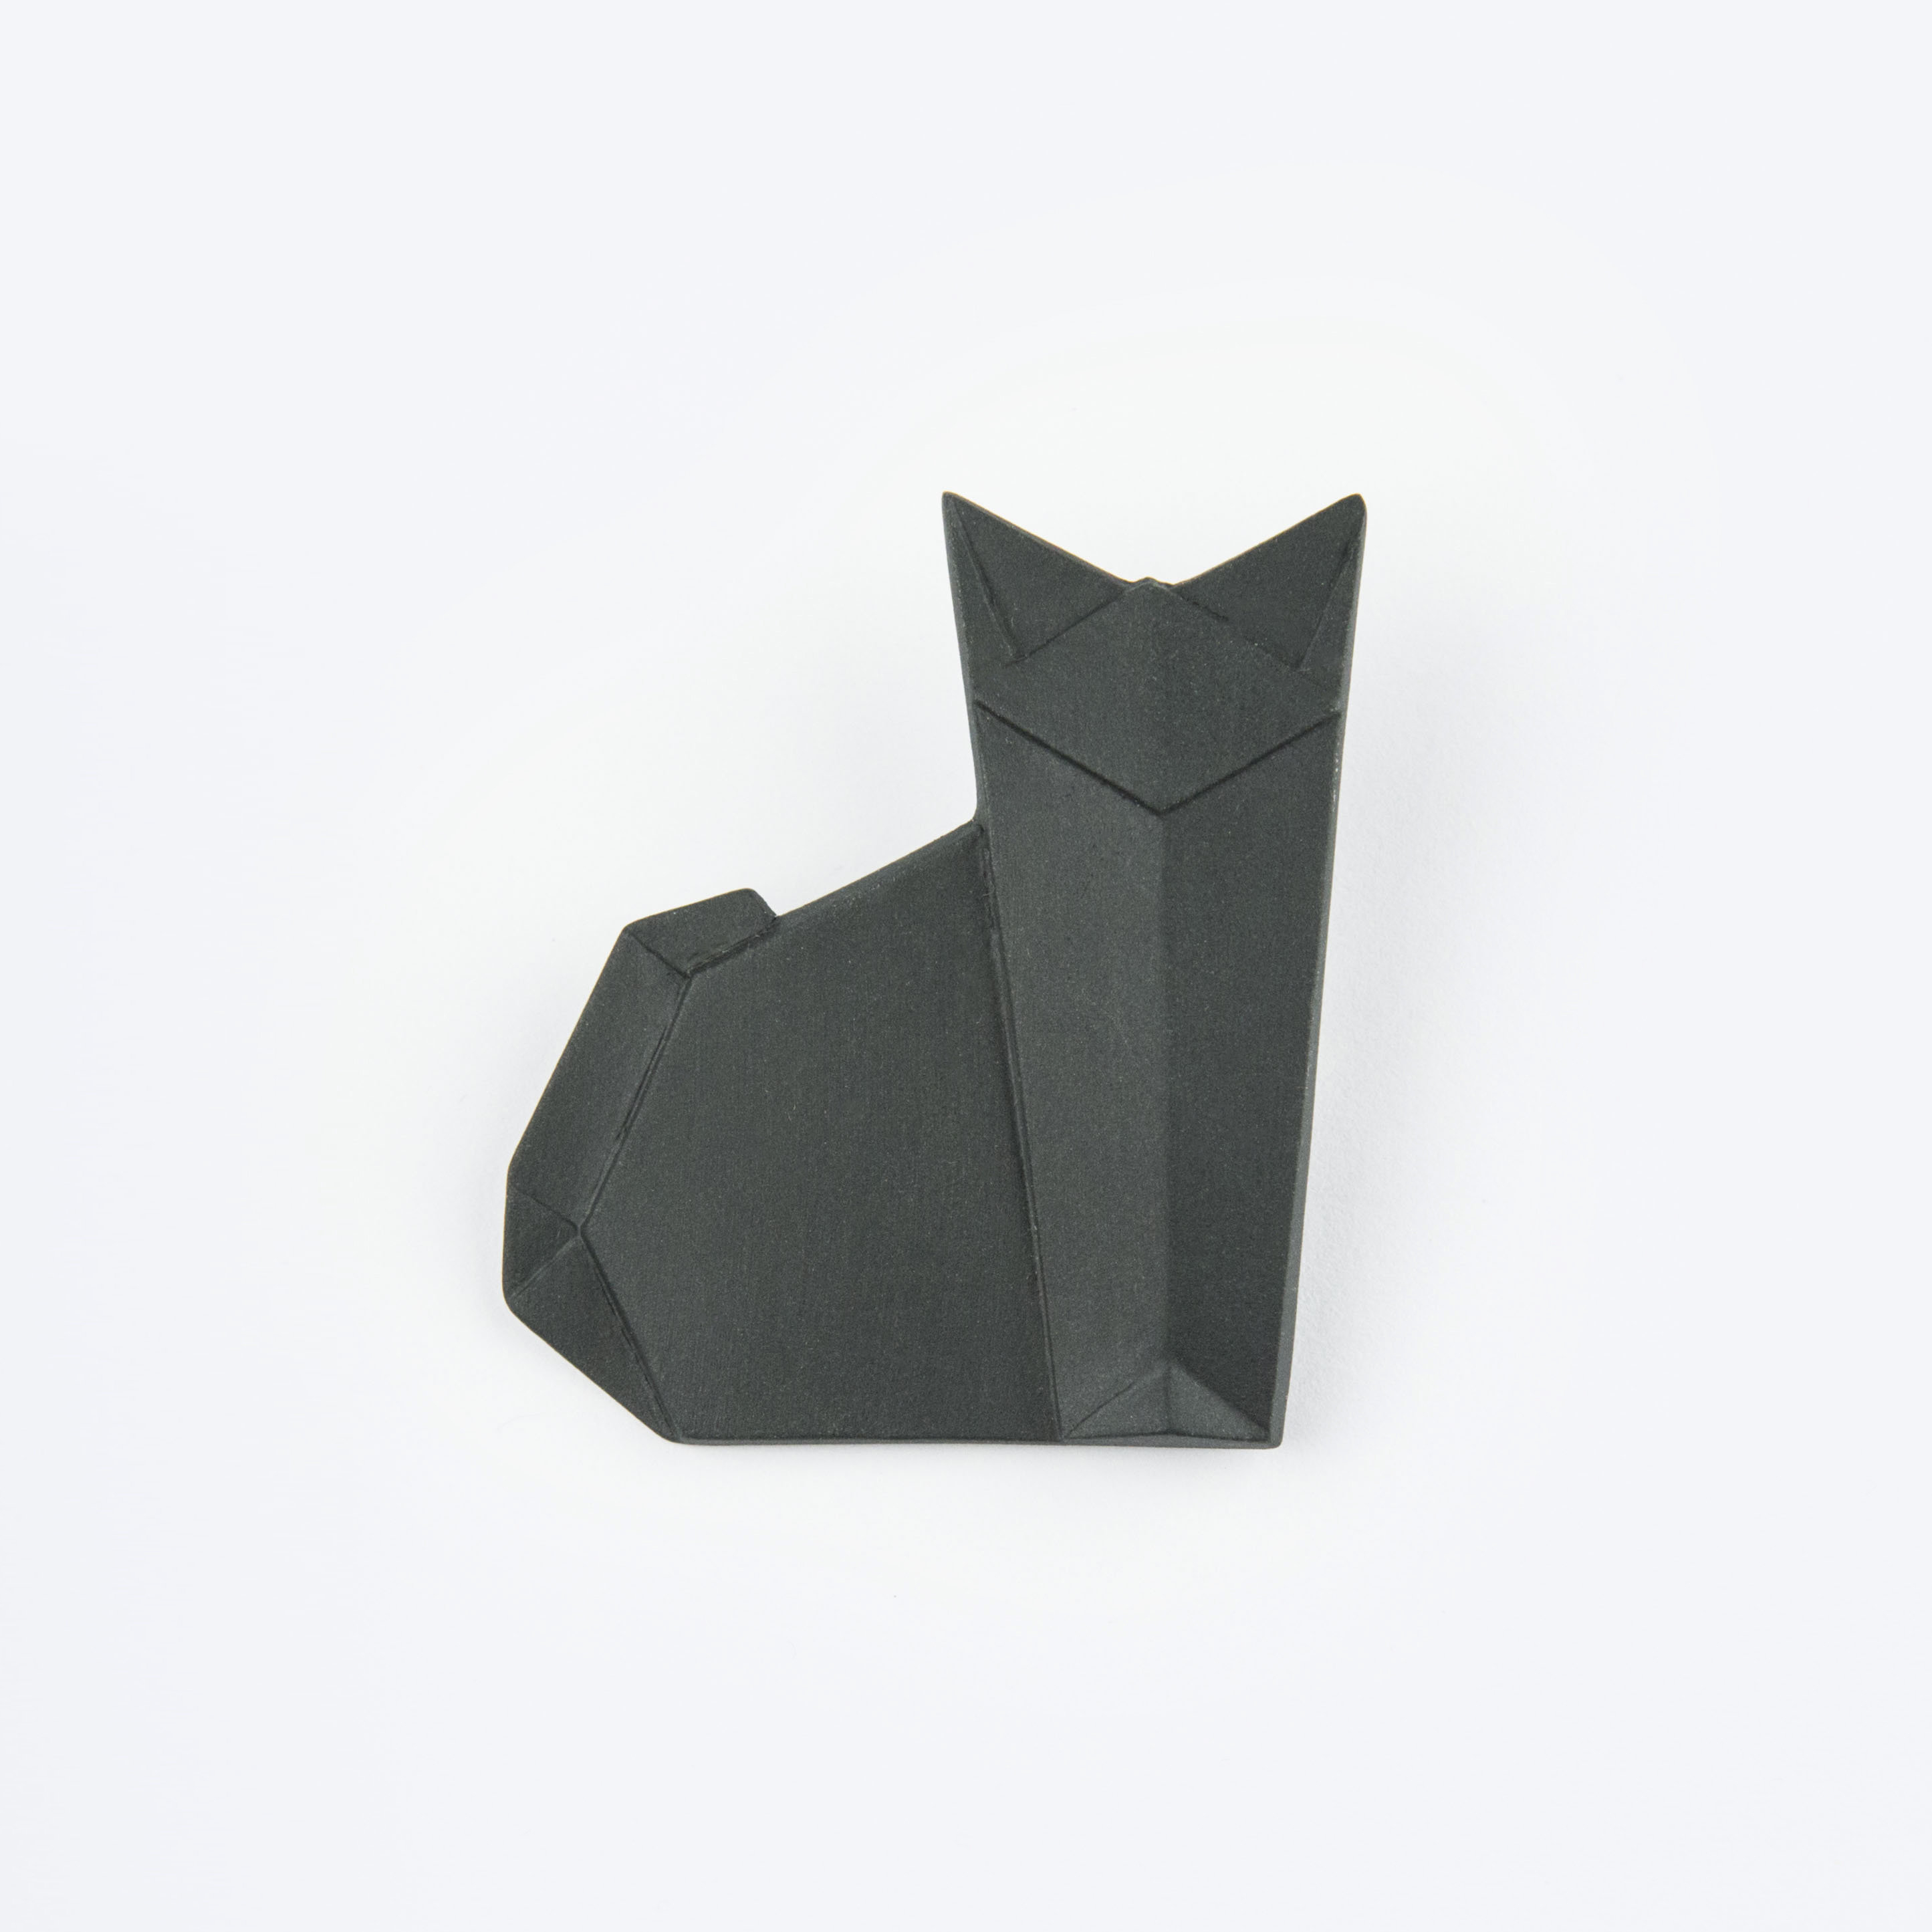 Origami Black Cat Porcelain Brooch Catblack Porcelainporcelain Origamiorigami Pinorigami Broochporcelain Pinjapaneese Origamiorigami Cat